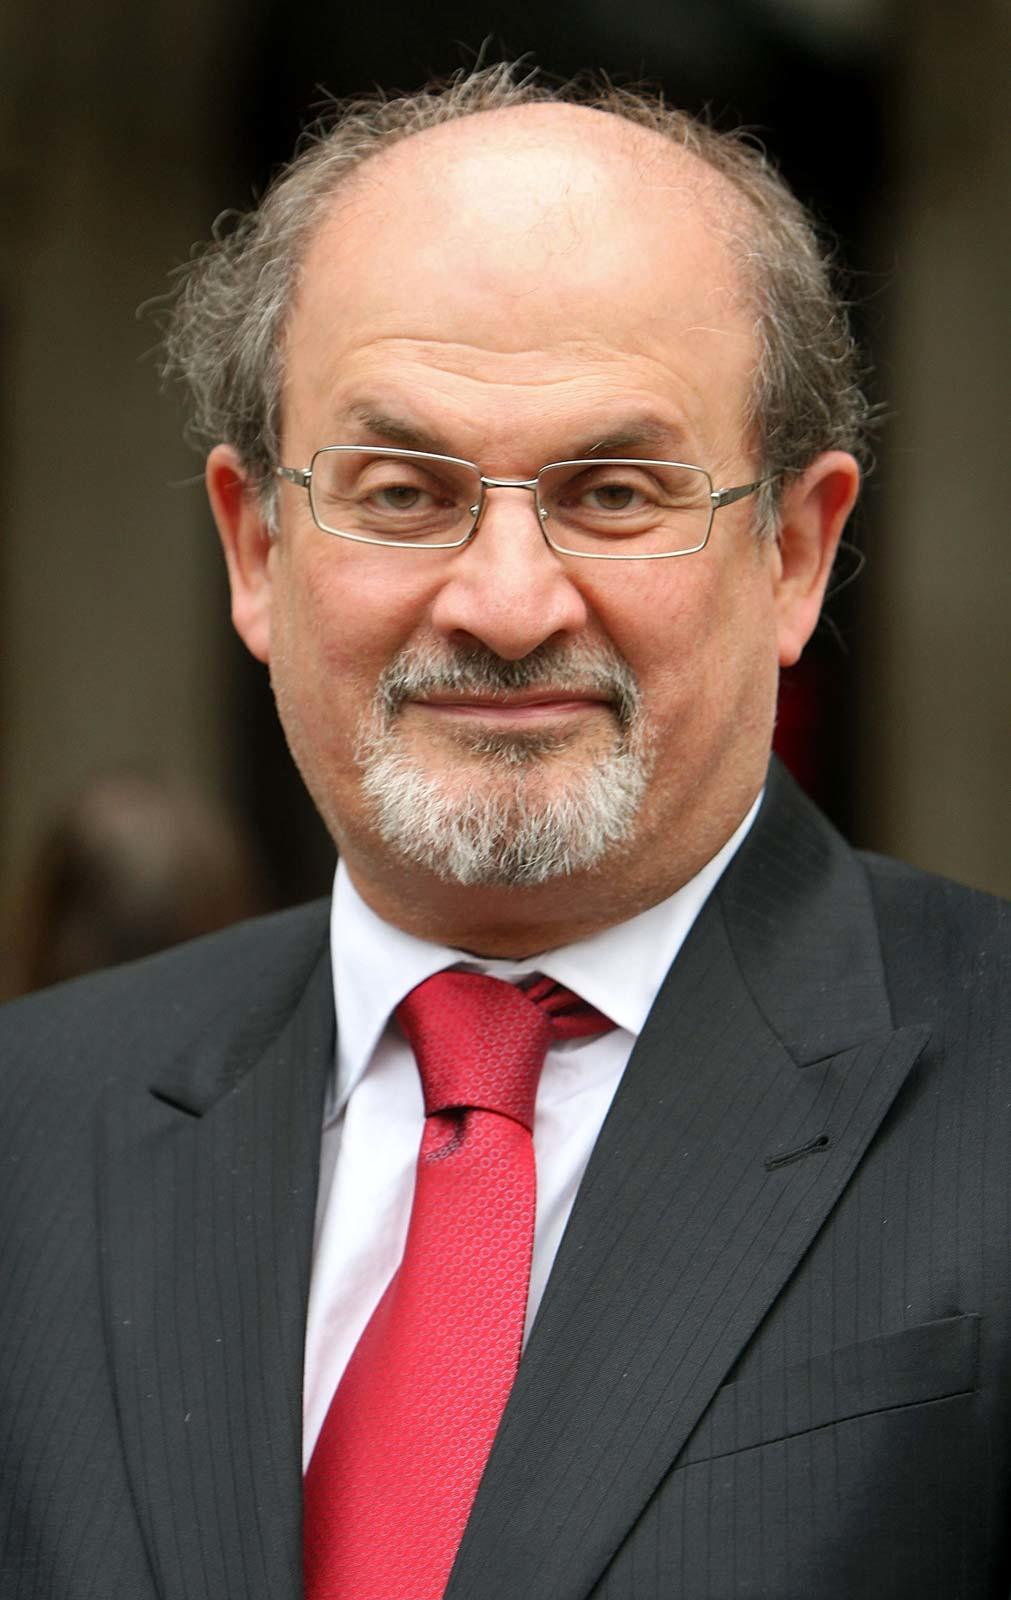 خبر جدید از «سلمان رشدی» پس از ترور